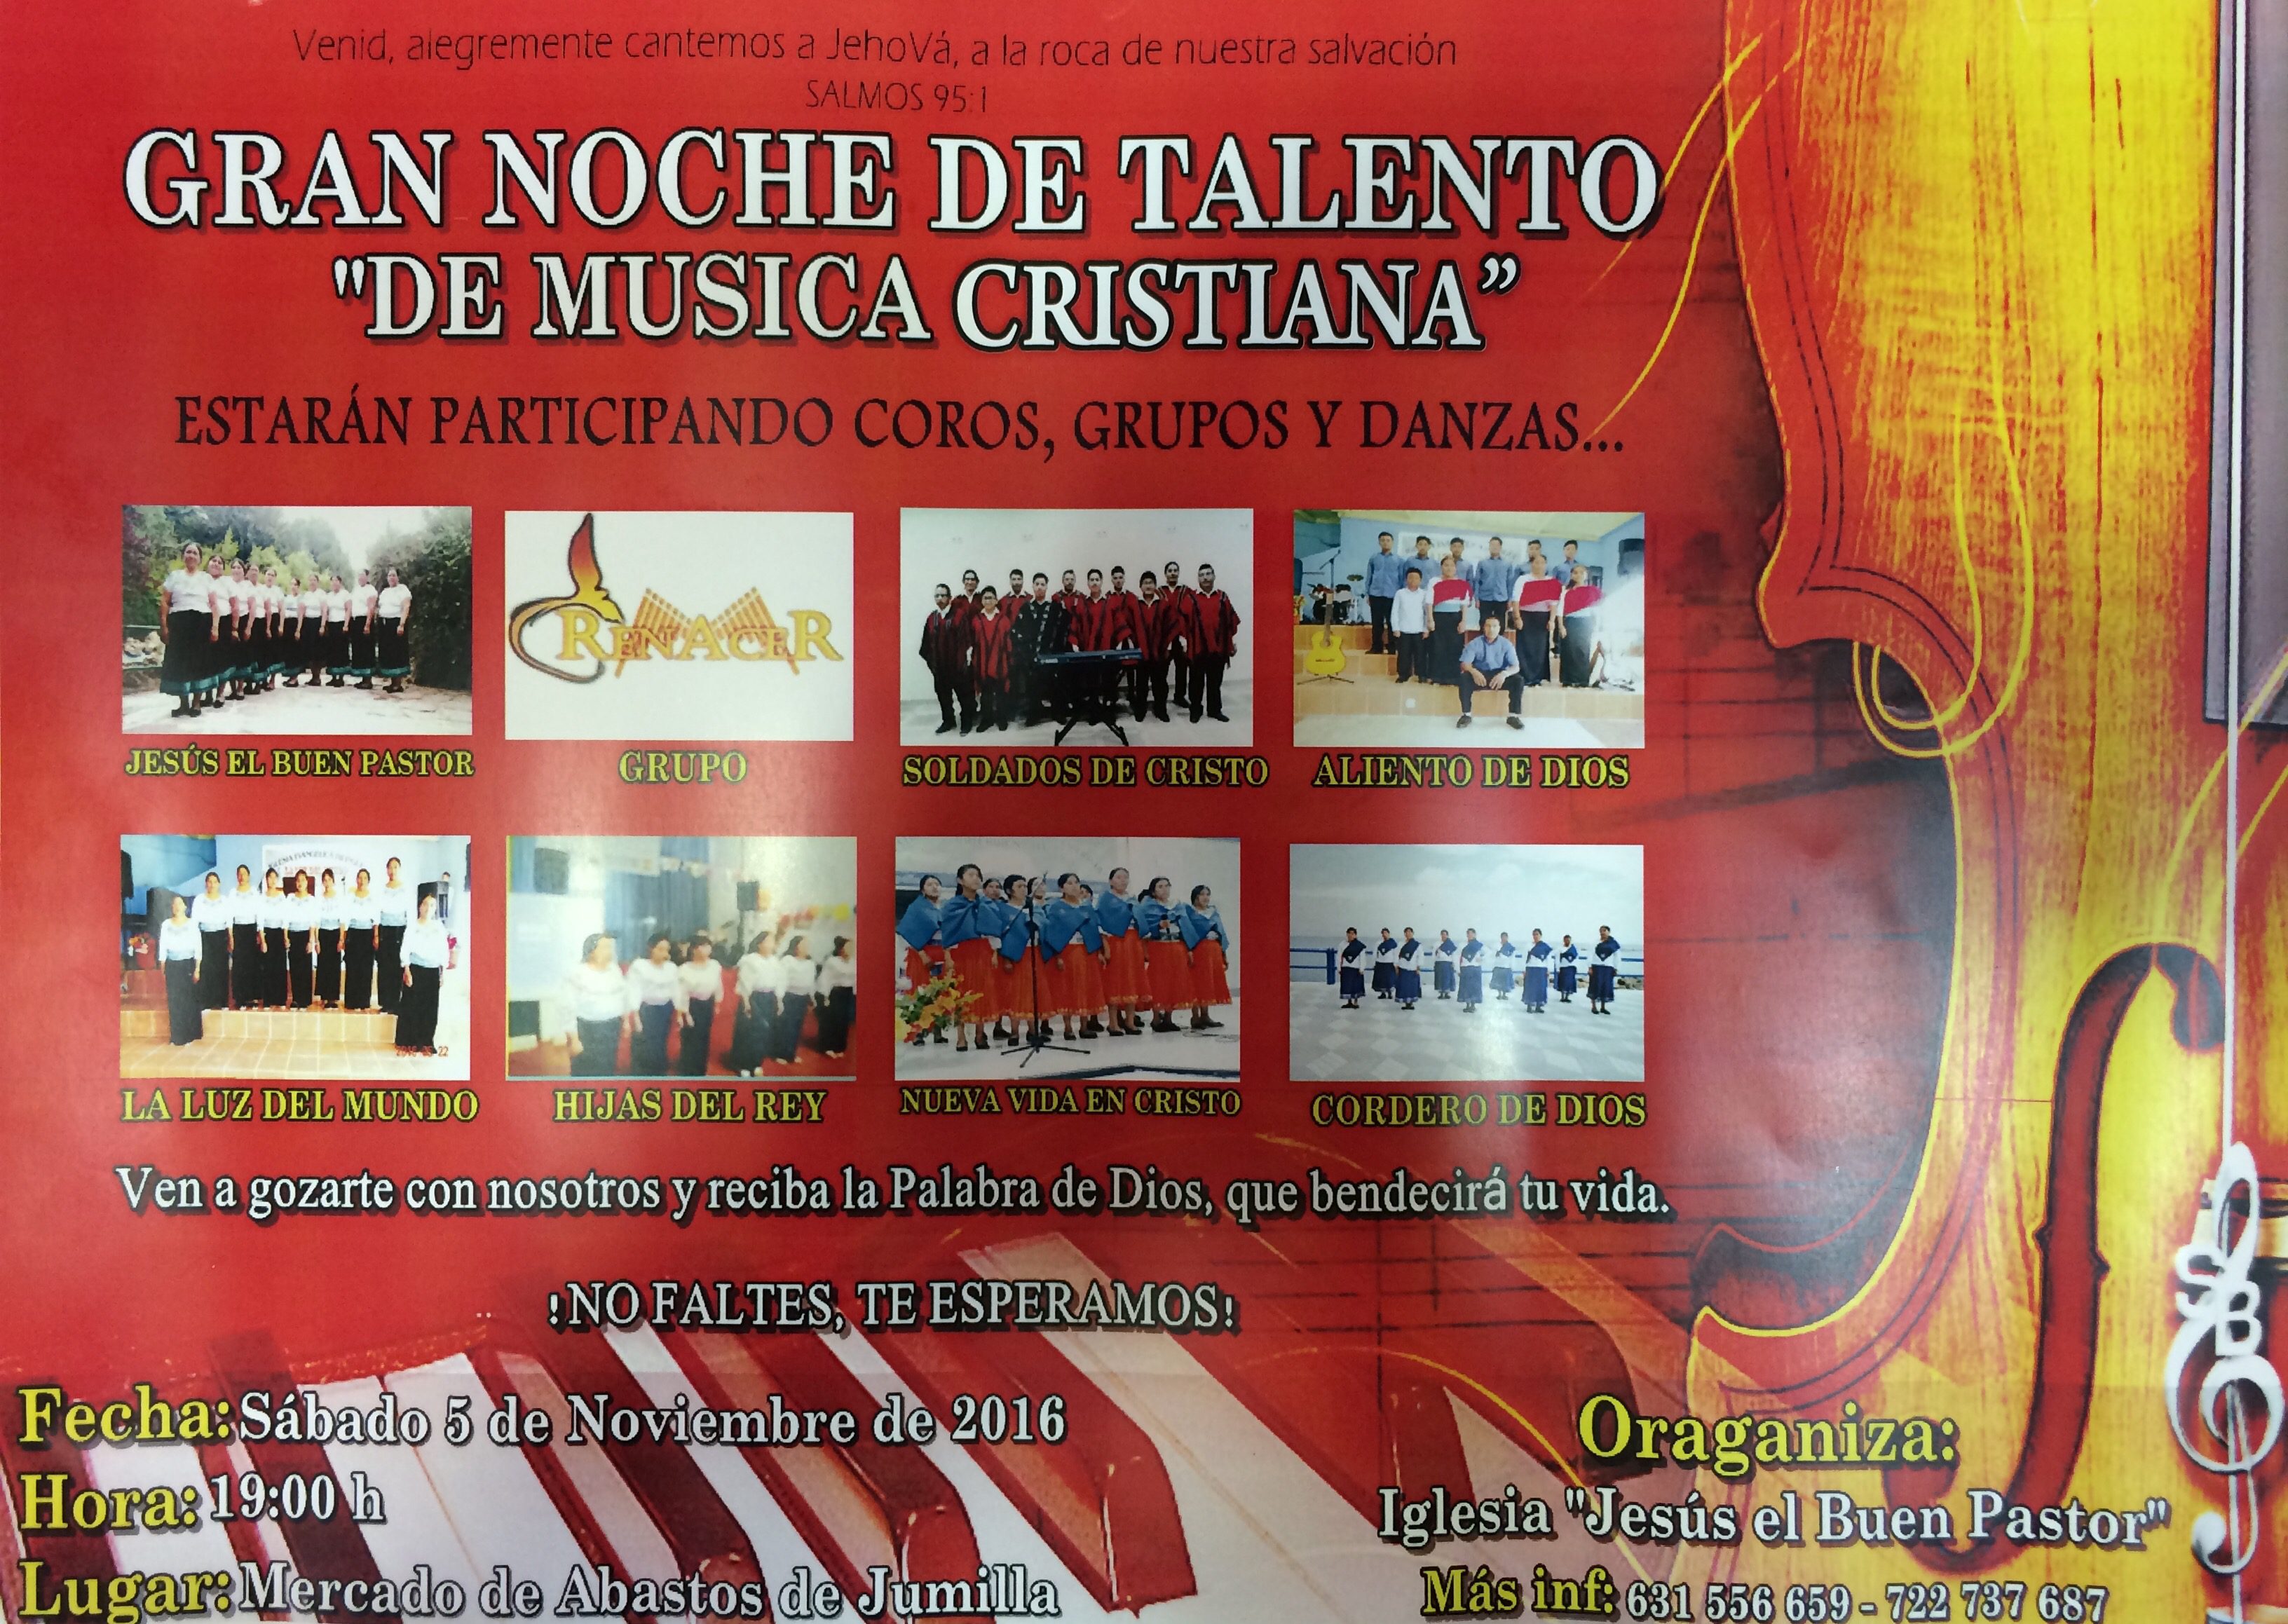 La Iglesia Jesús del Buen Pastor organiza una gran noche de talento de  “Música Cristiana” en el salón del mercado - Siete Días Jumilla